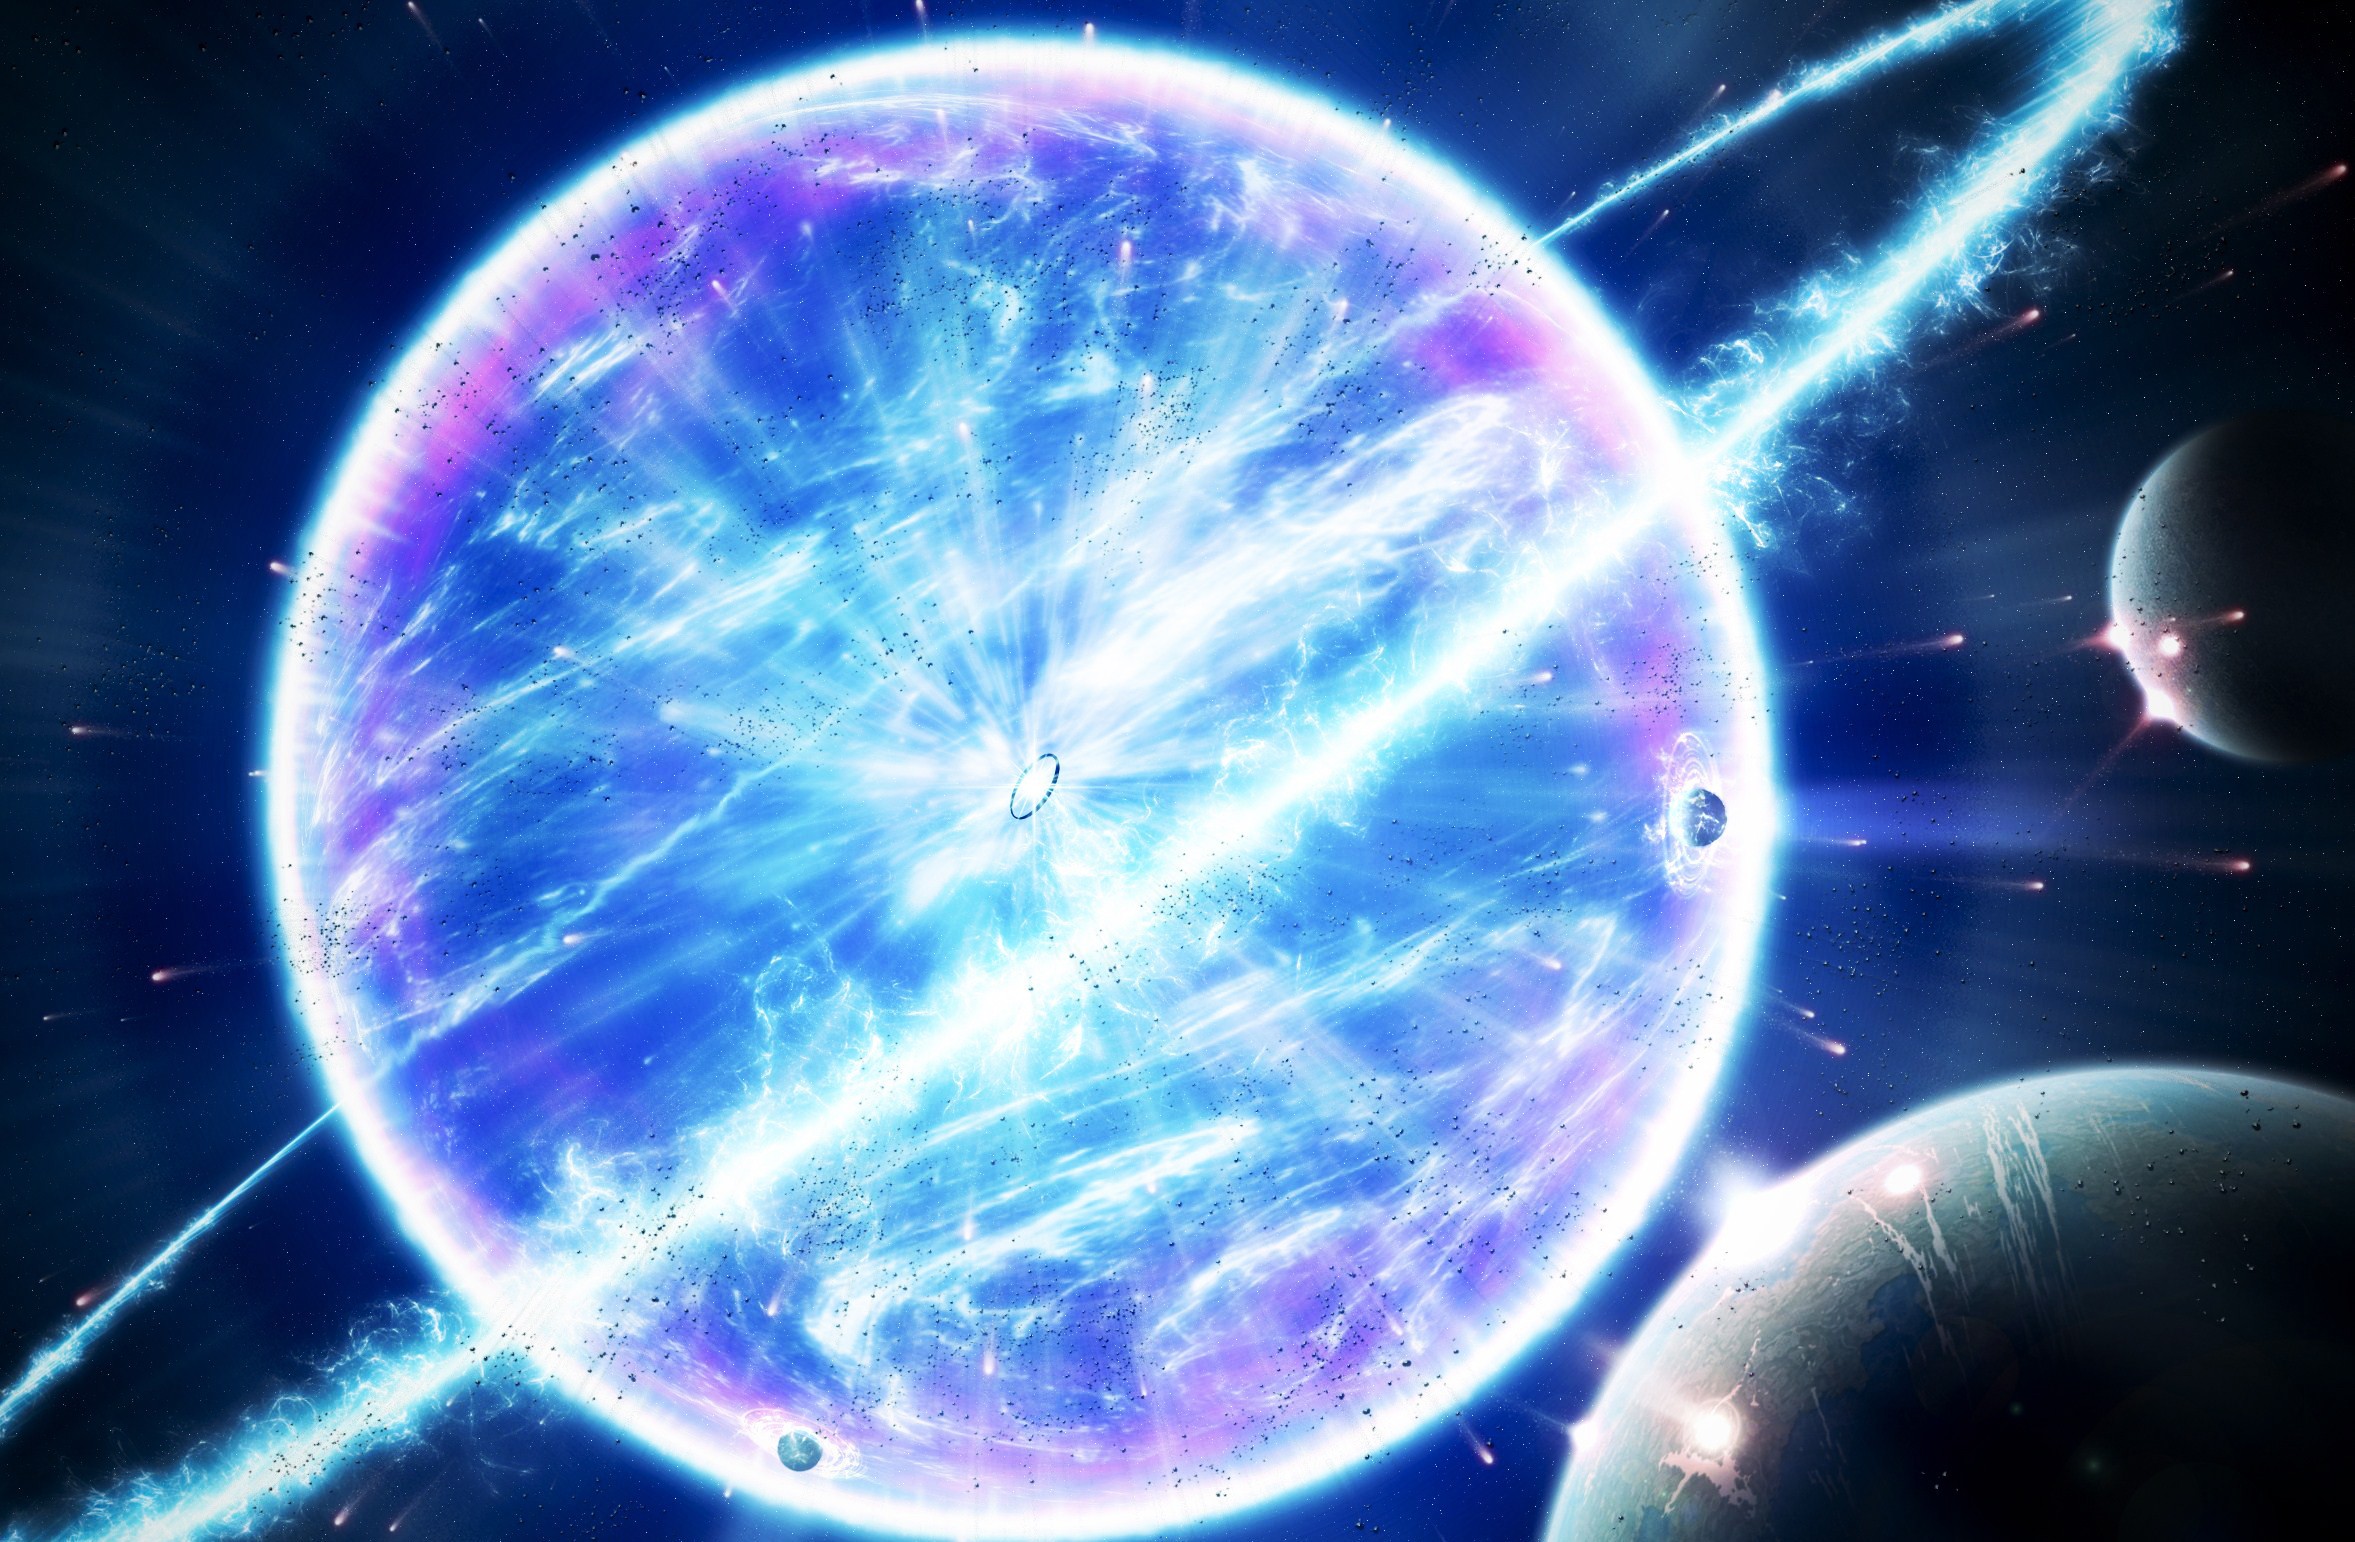 超新星爆发有多恐怖?竟堪比一颗氢弹在你眼前爆炸!